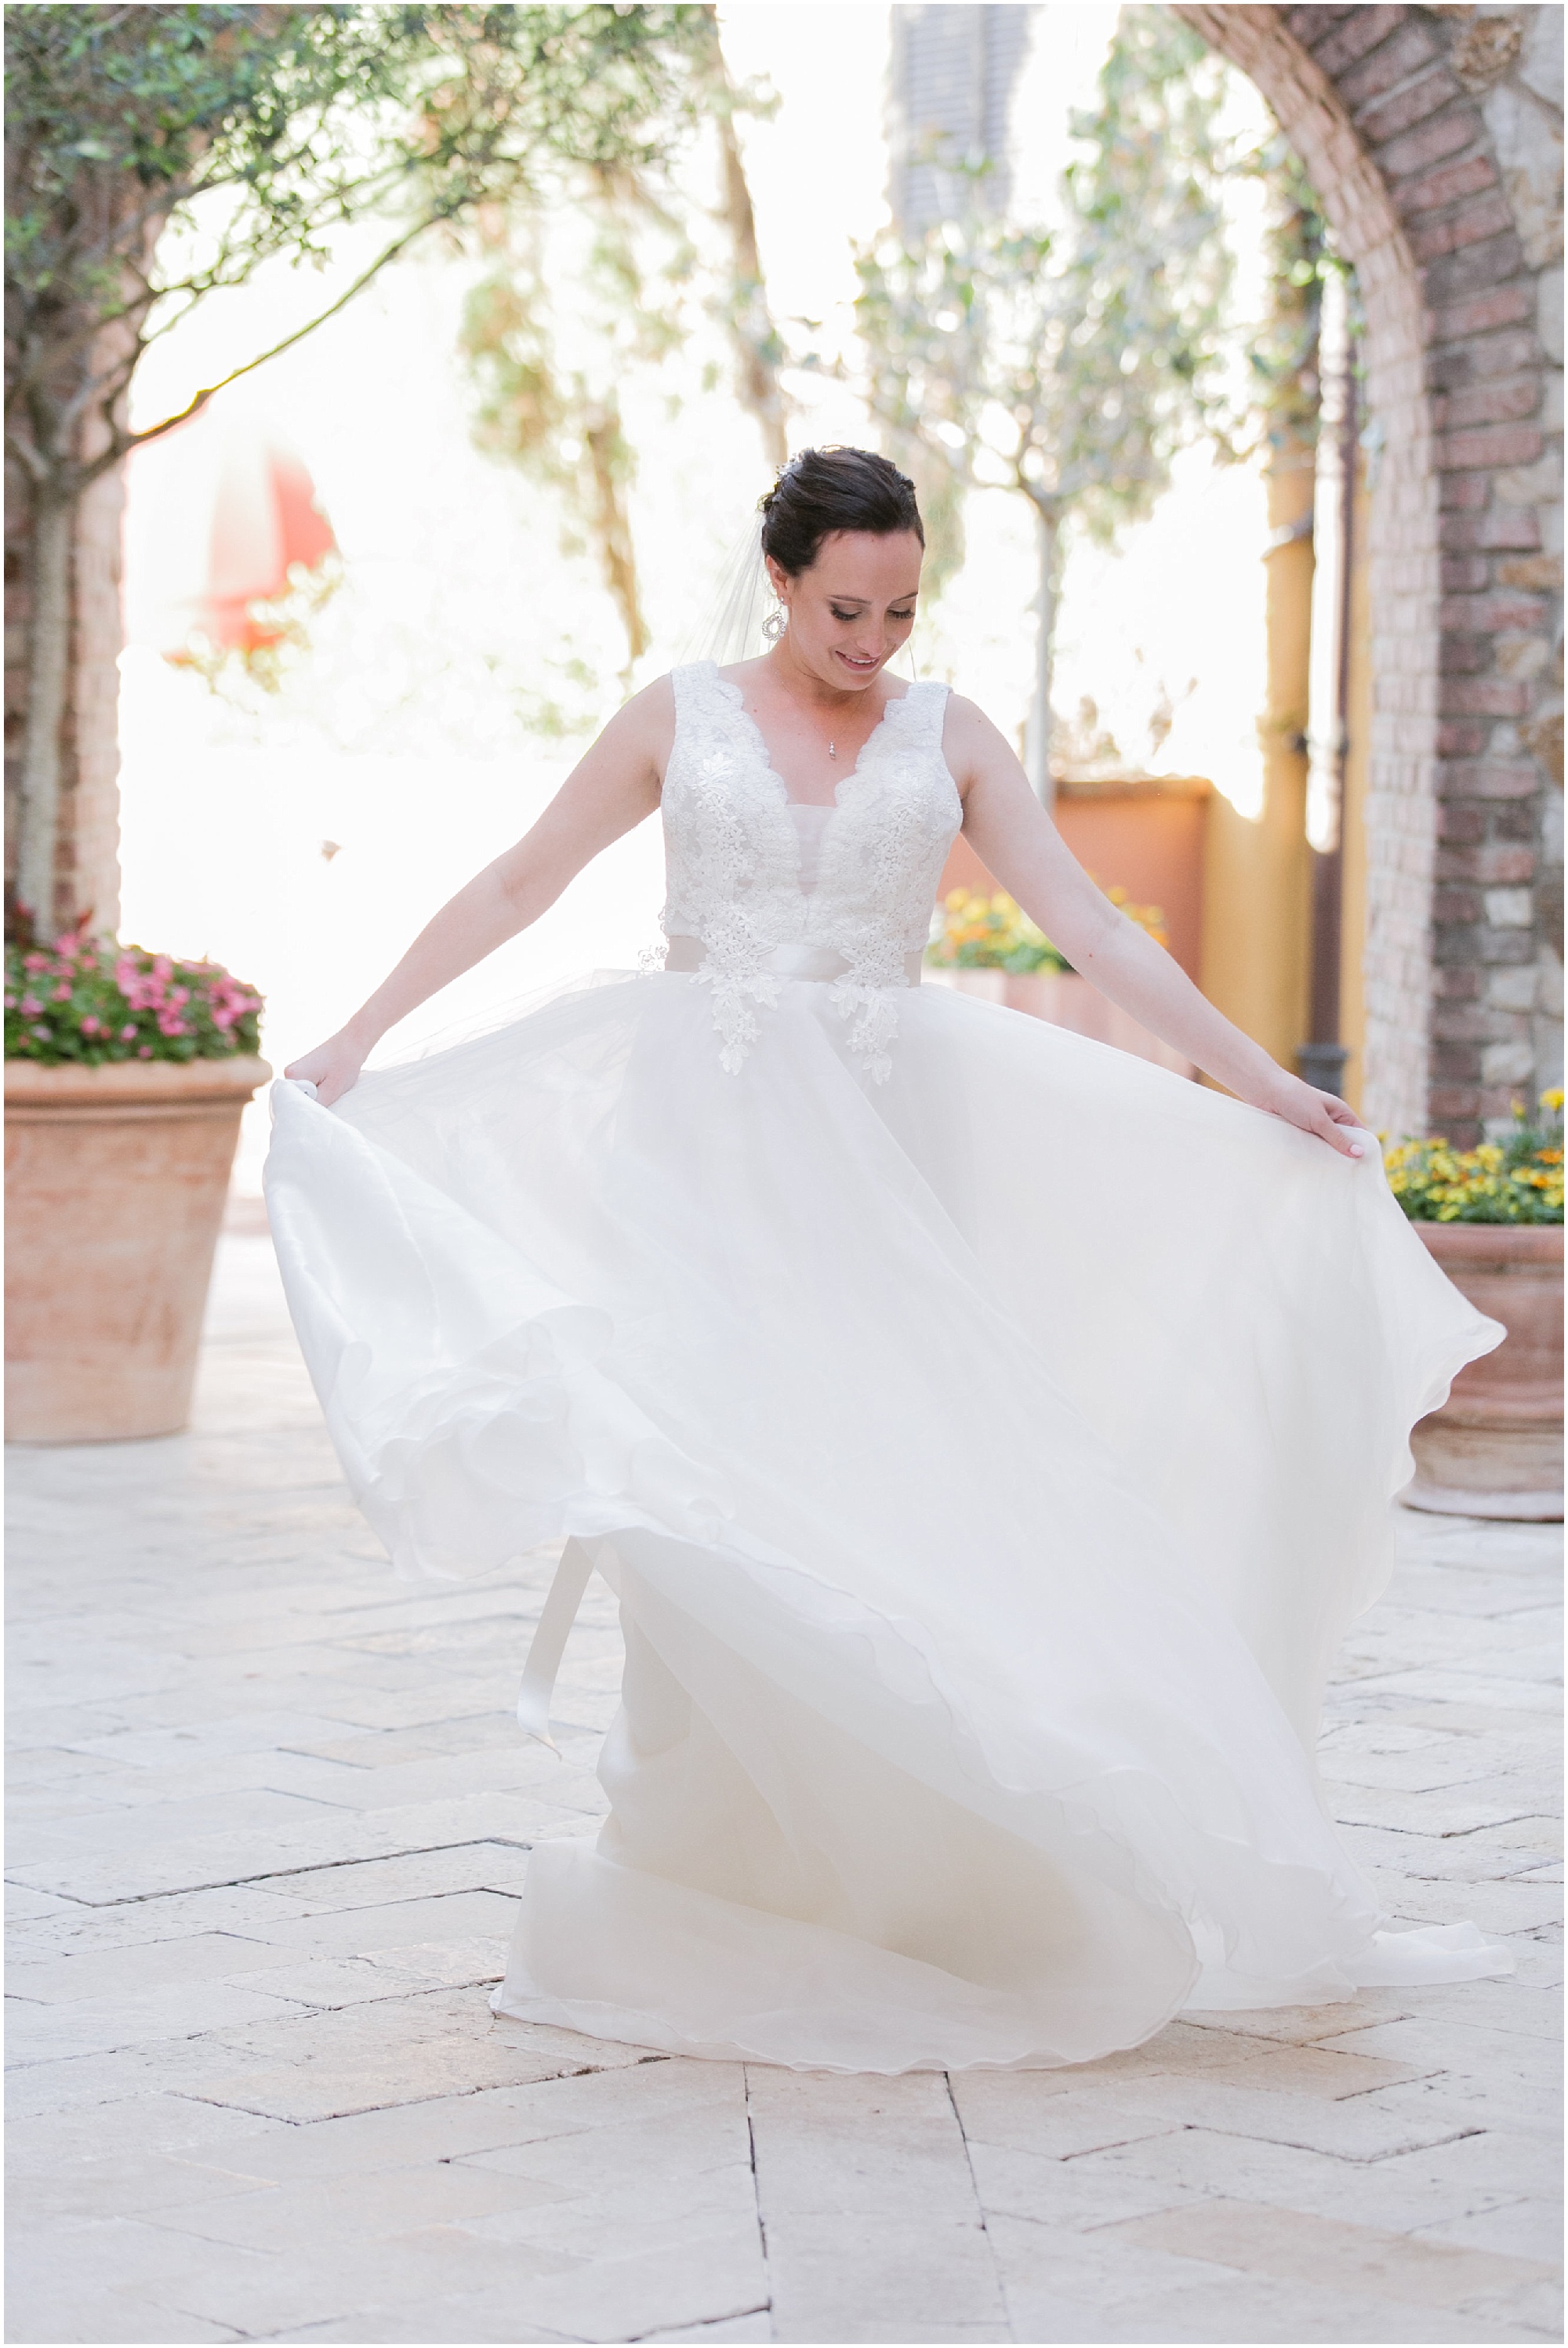 Bella Collina bride dancing in her wedding dress